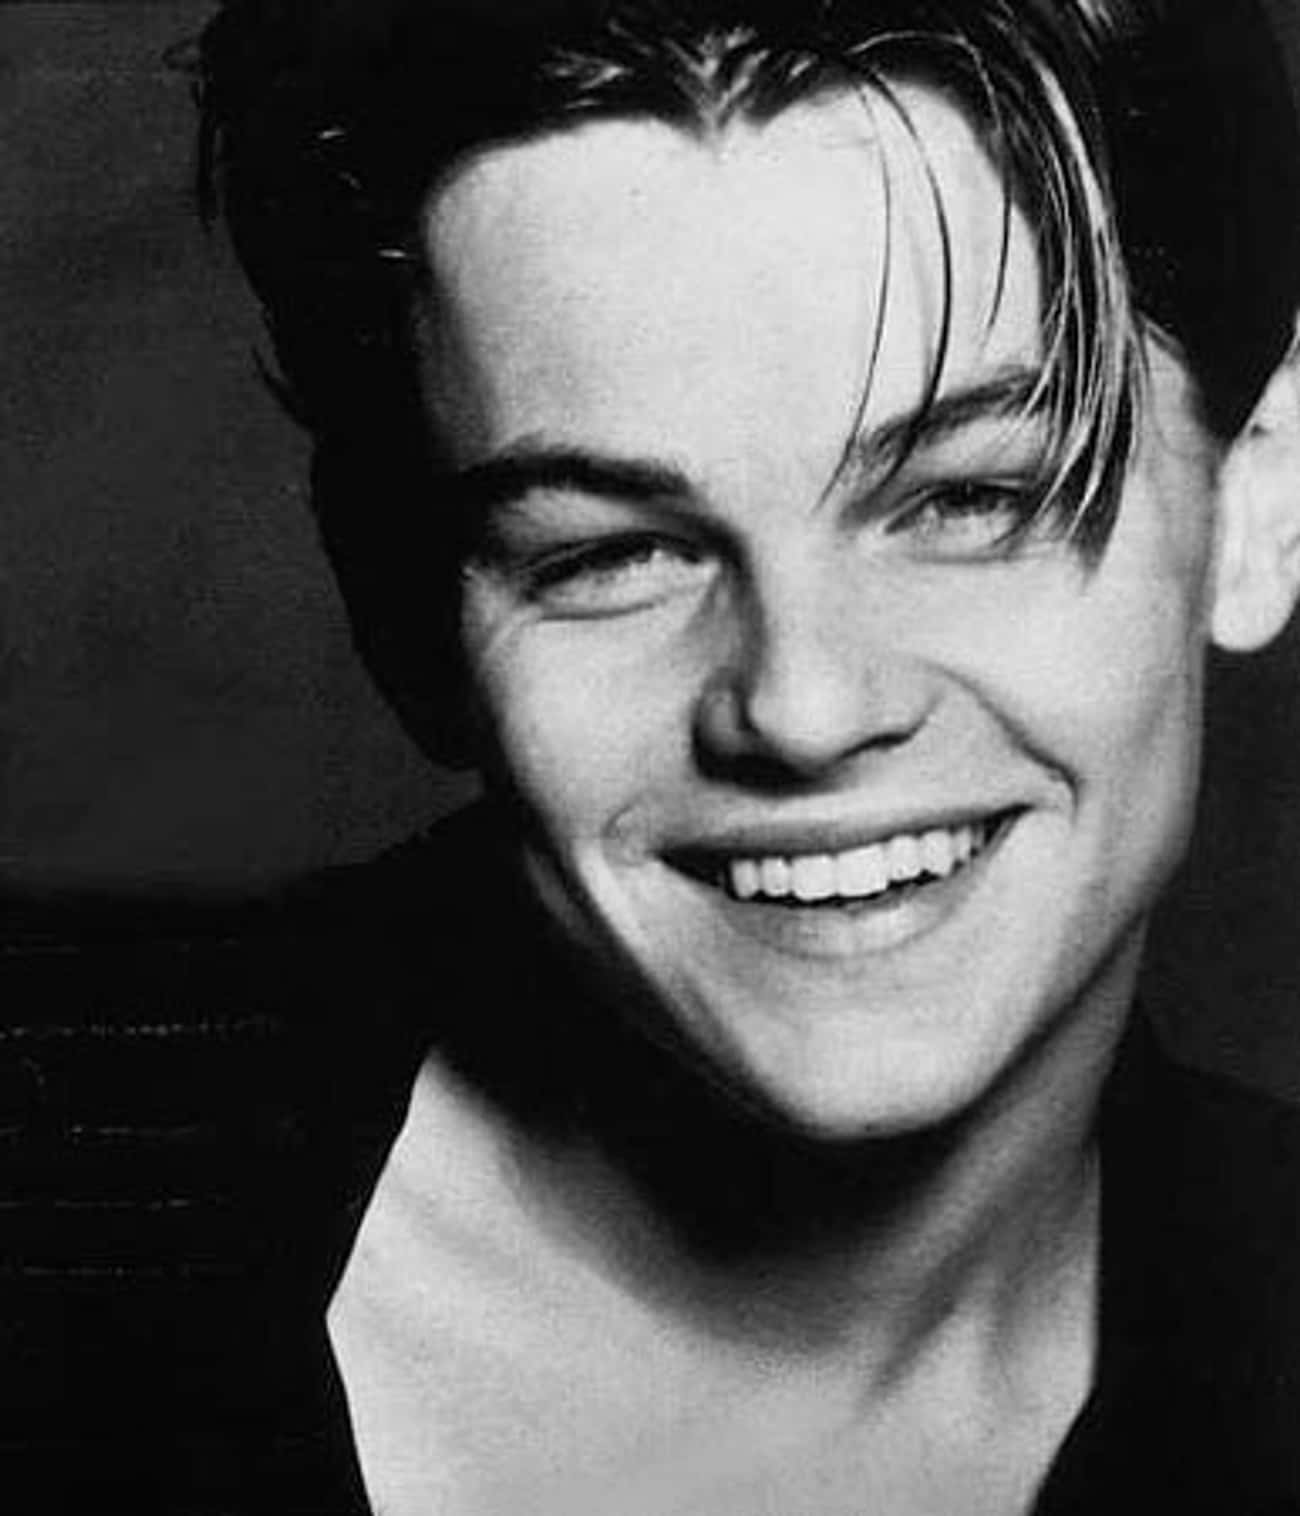 Young Leonardo DiCaprio Smiling